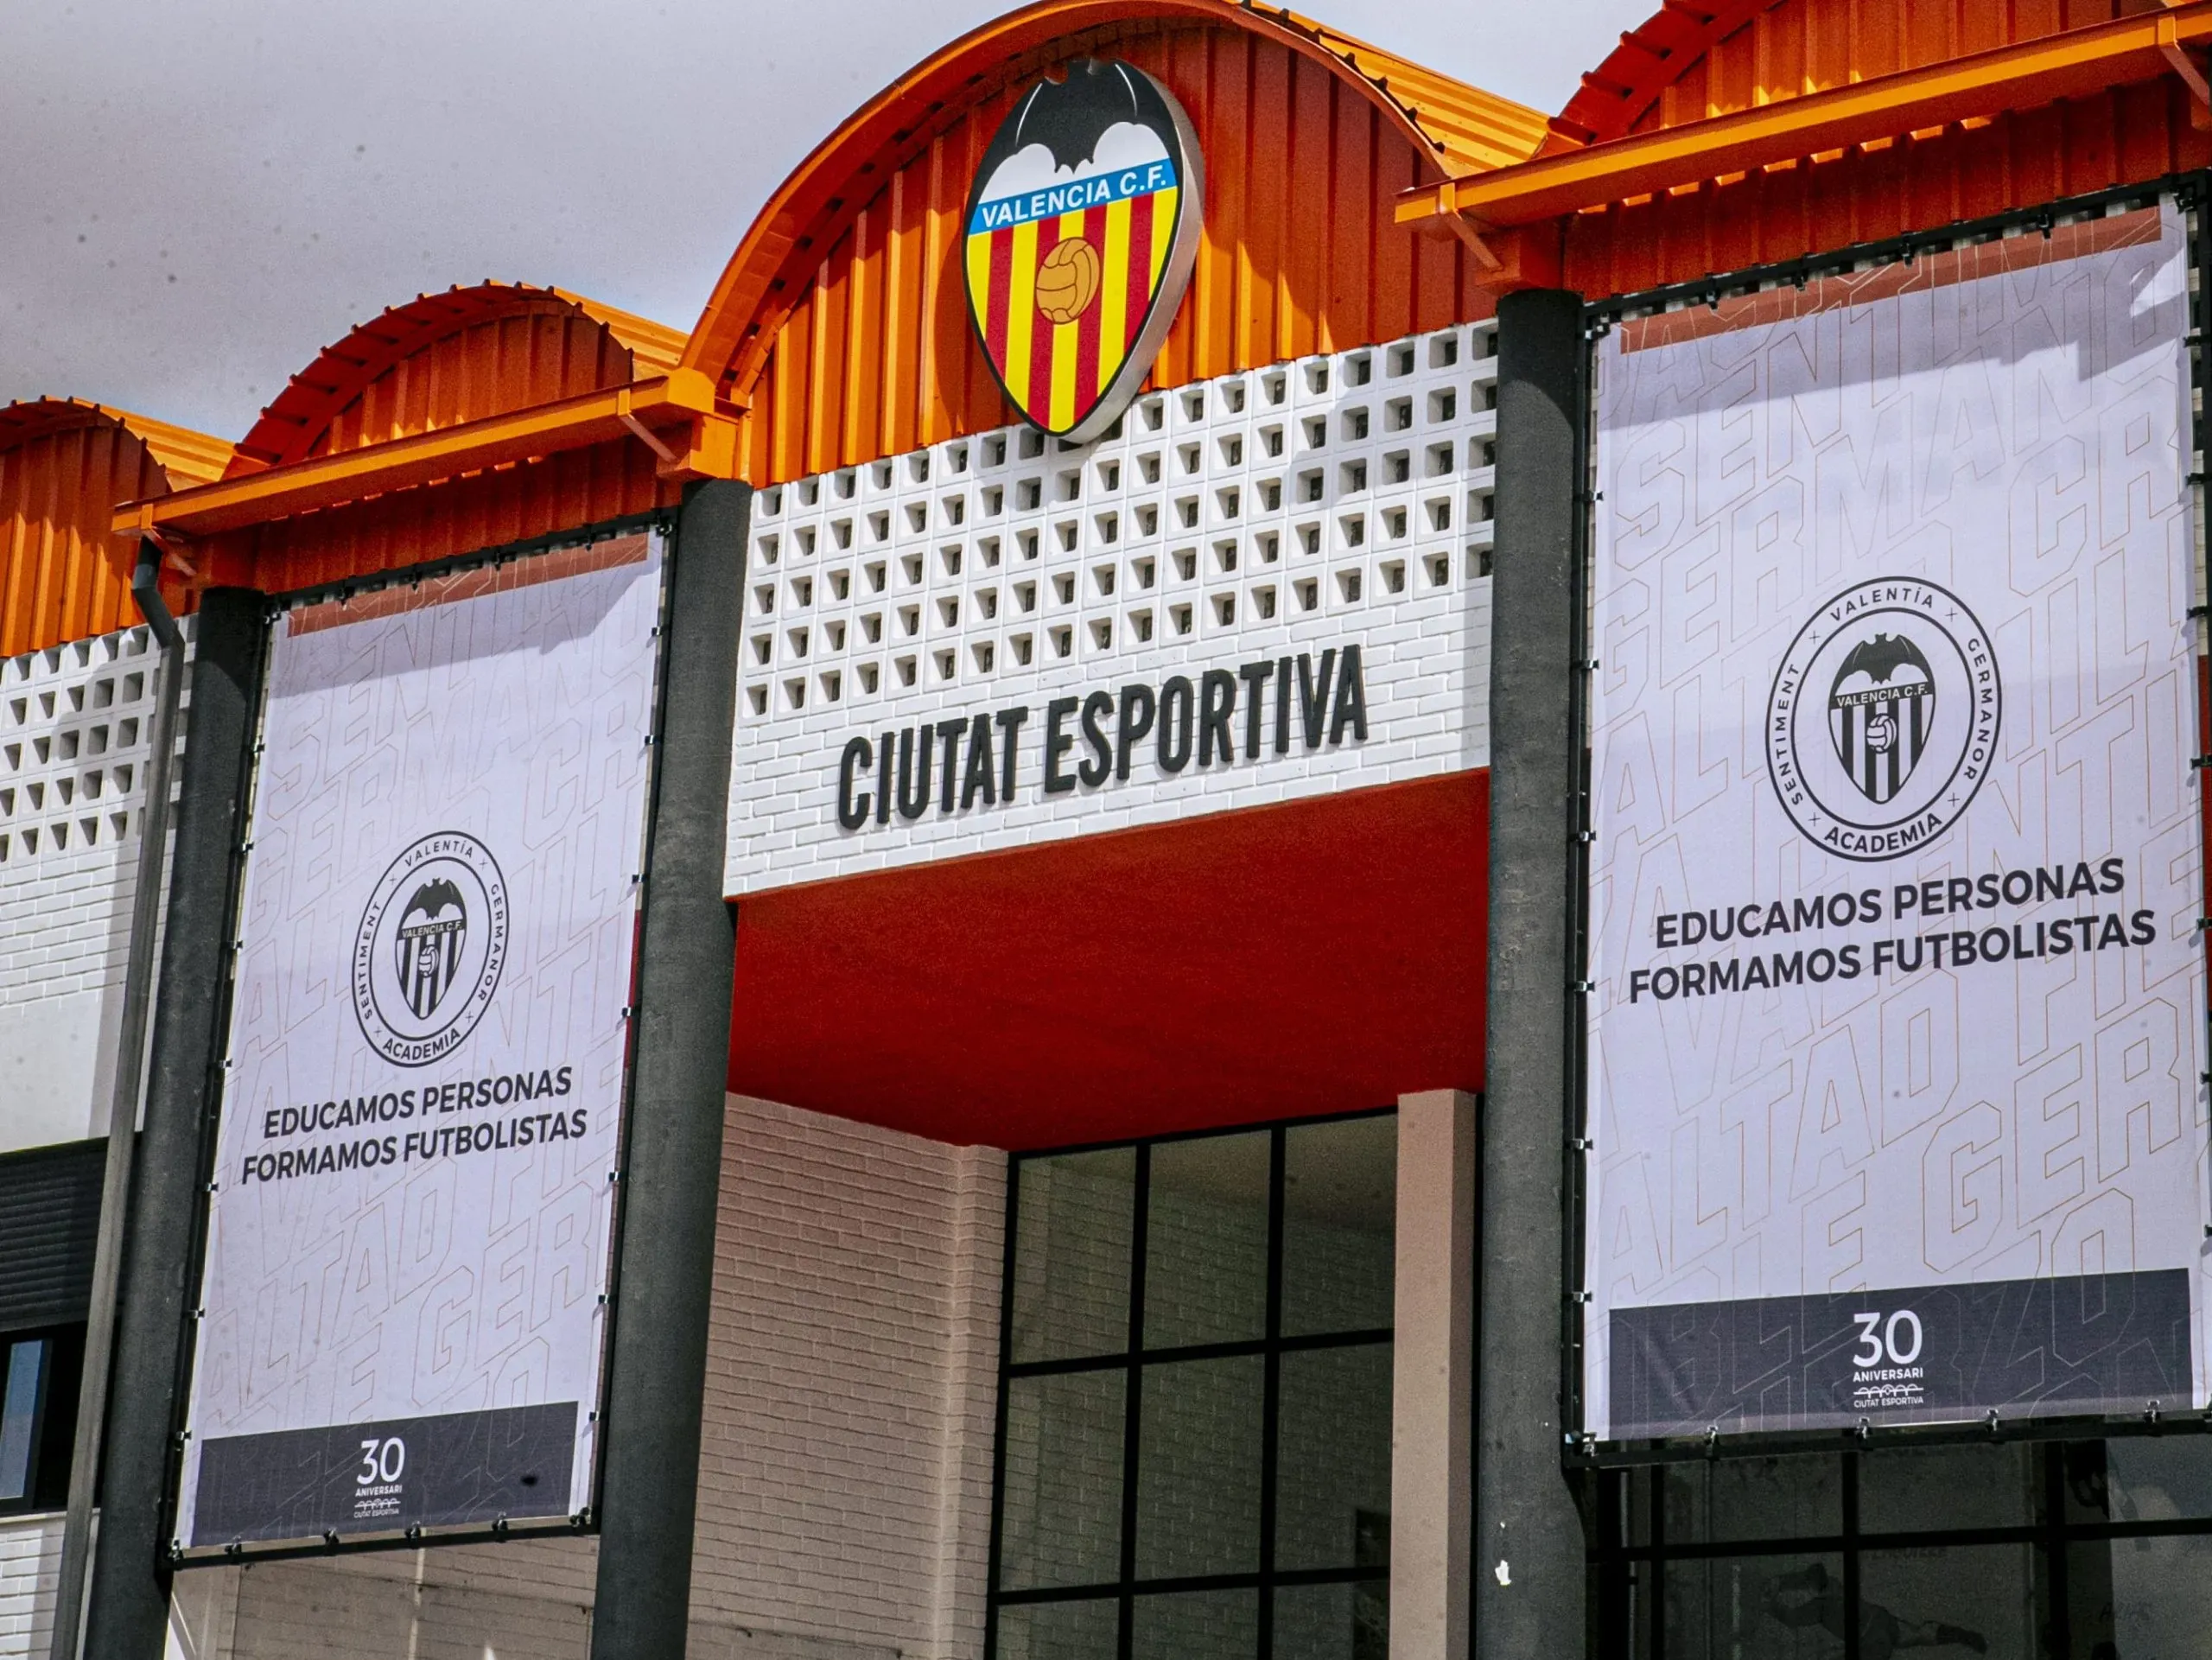 La Ciudad Deportiva de Paterna, en las afueras de Valencia: allí se entrenan los equipos, hay una residencia para juveniles y el estadio donde juega el equipo femenino y el Valencia Mestalla. (Foto: Prensa Valencia CF)